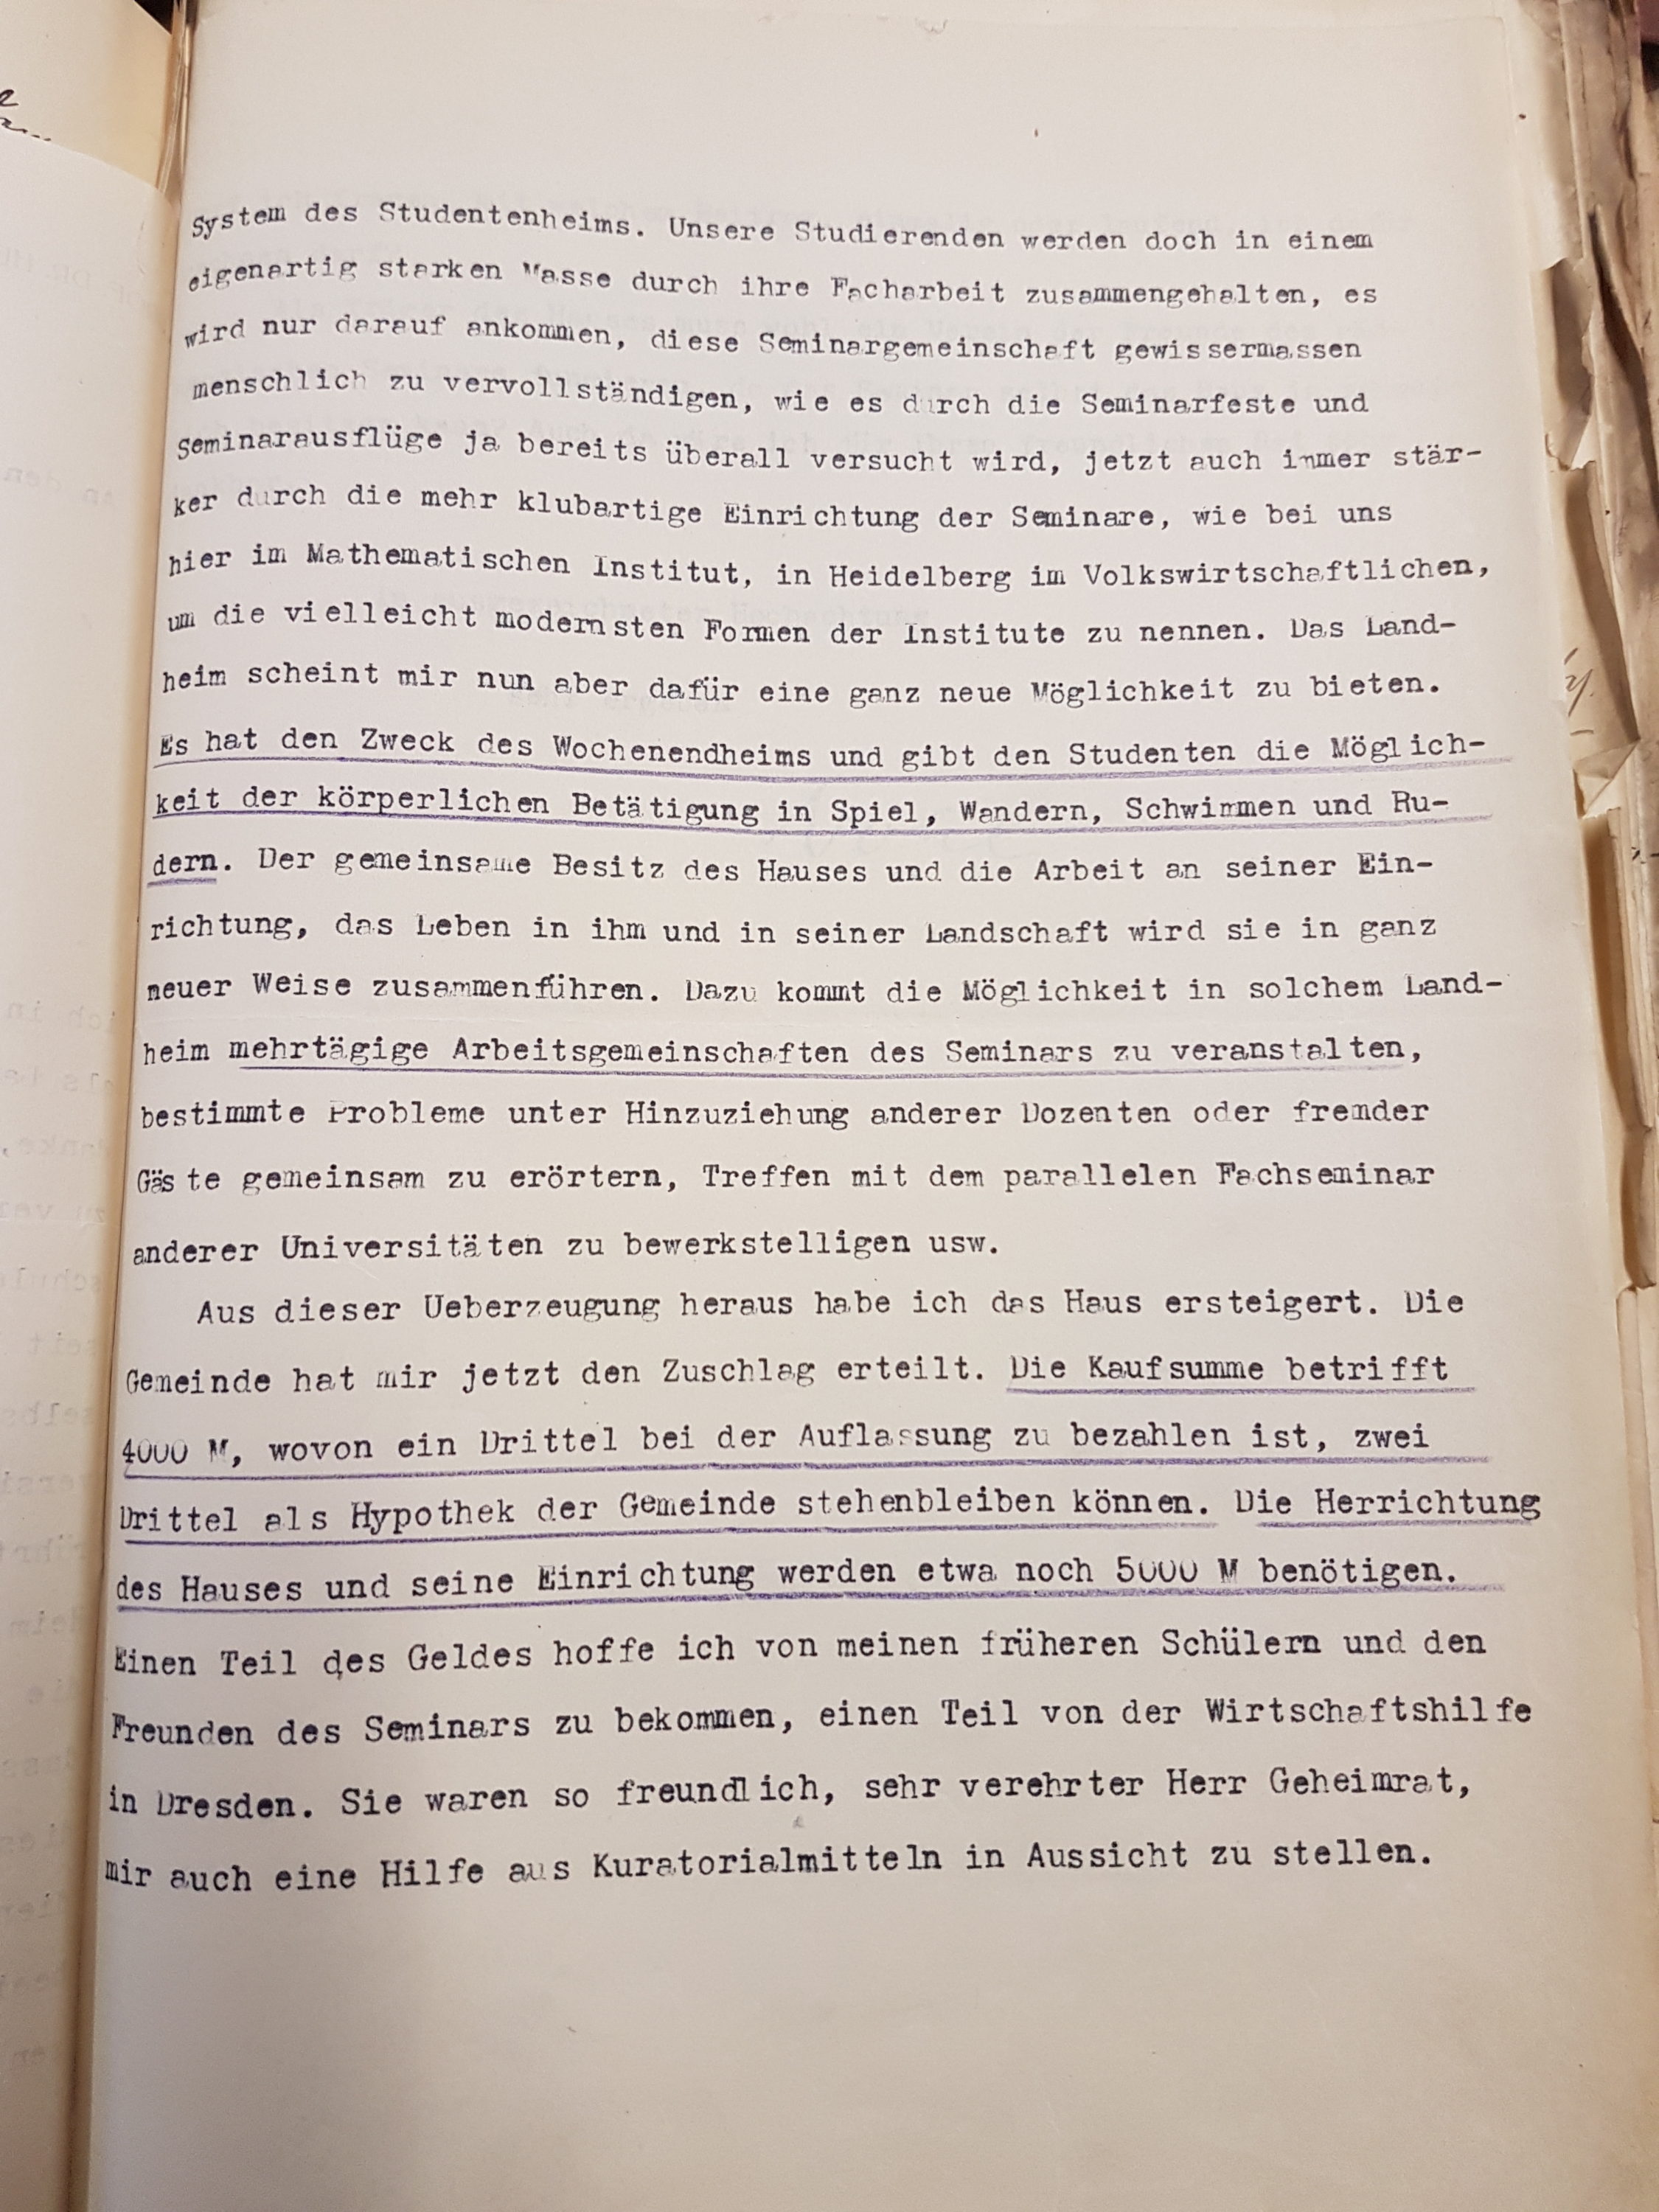 Brief Nohls vom 15.10.1929 an den Kurator der Universität betreffend die Ersteigerung eines Hauses als Landheim in Lippoldsberg, Seite 2. Quelle: Universitätsarchiv Göttingen: Kur. 1263; unpag.